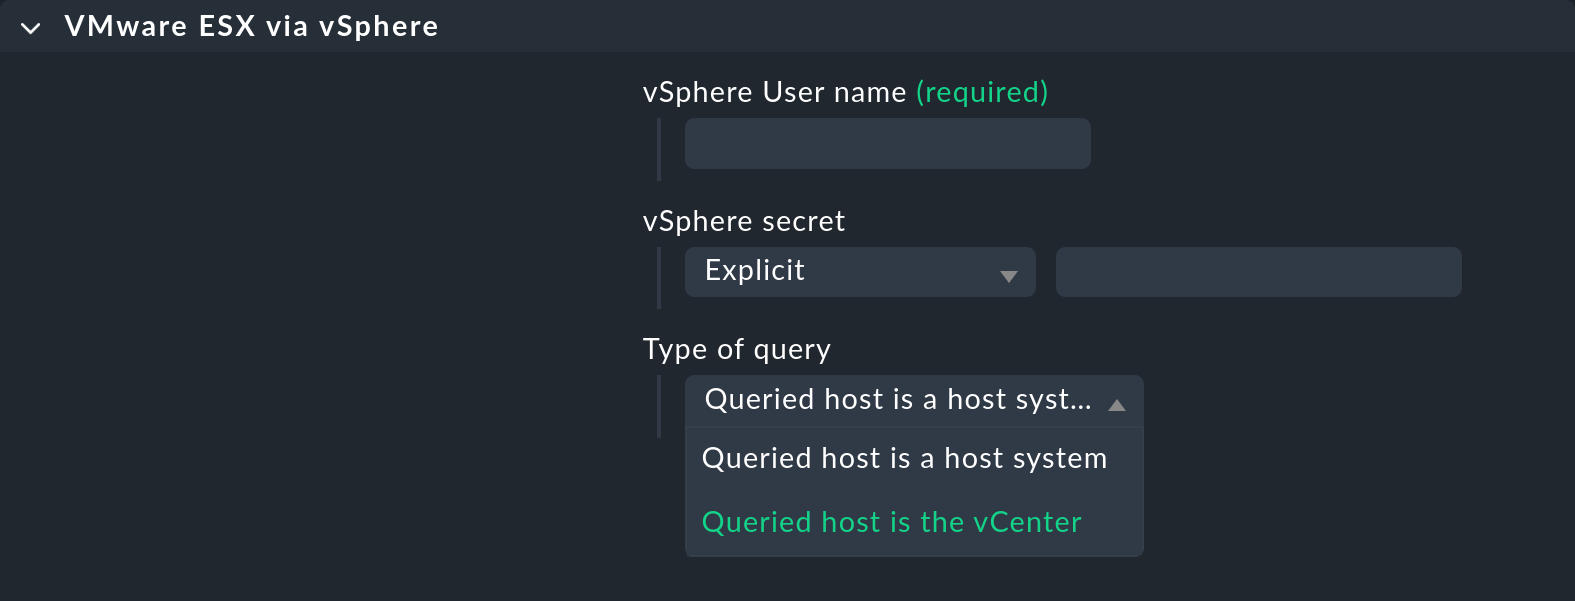 Auswahlmöglichkeiten 'host system' vs. 'vCenter' in der VMware ESXi Konfiguration.